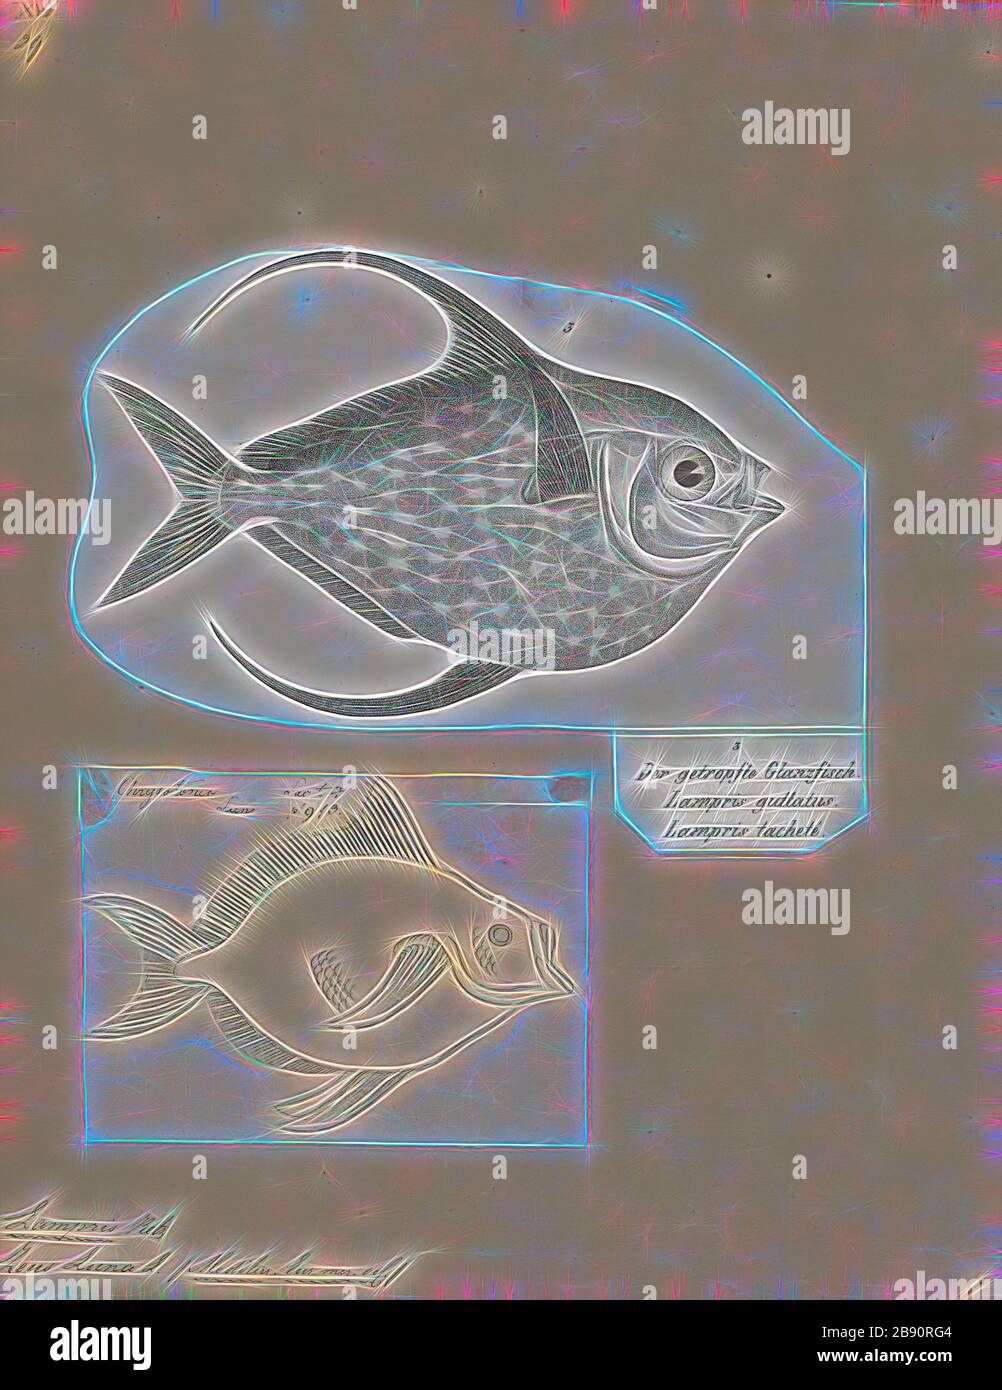 Lampridae luna, Print, Opah, Opahs (aussi communément appelés moonfish, sunfish (à ne pas confondre avec Molidae), kingfish, poêle à feuilles rouges et aiglefin de Jérusalem) sont de grands poissons pélagiques colorés et corsés comprenant la petite famille des Lampridae (également épelés Lamprididae). Seulement deux espèces vivantes se trouvent dans un seul genre : Lampris (de la lampride grecque, brillante ou claire). Une espèce se trouve dans les eaux tropicales et tempérées de la plupart des océans, tandis que l'autre est limitée à une distribution circumglobale dans l'océan Austral, avec les 34°S comme limite nord. Deux espèces supplémentaires, Banque D'Images